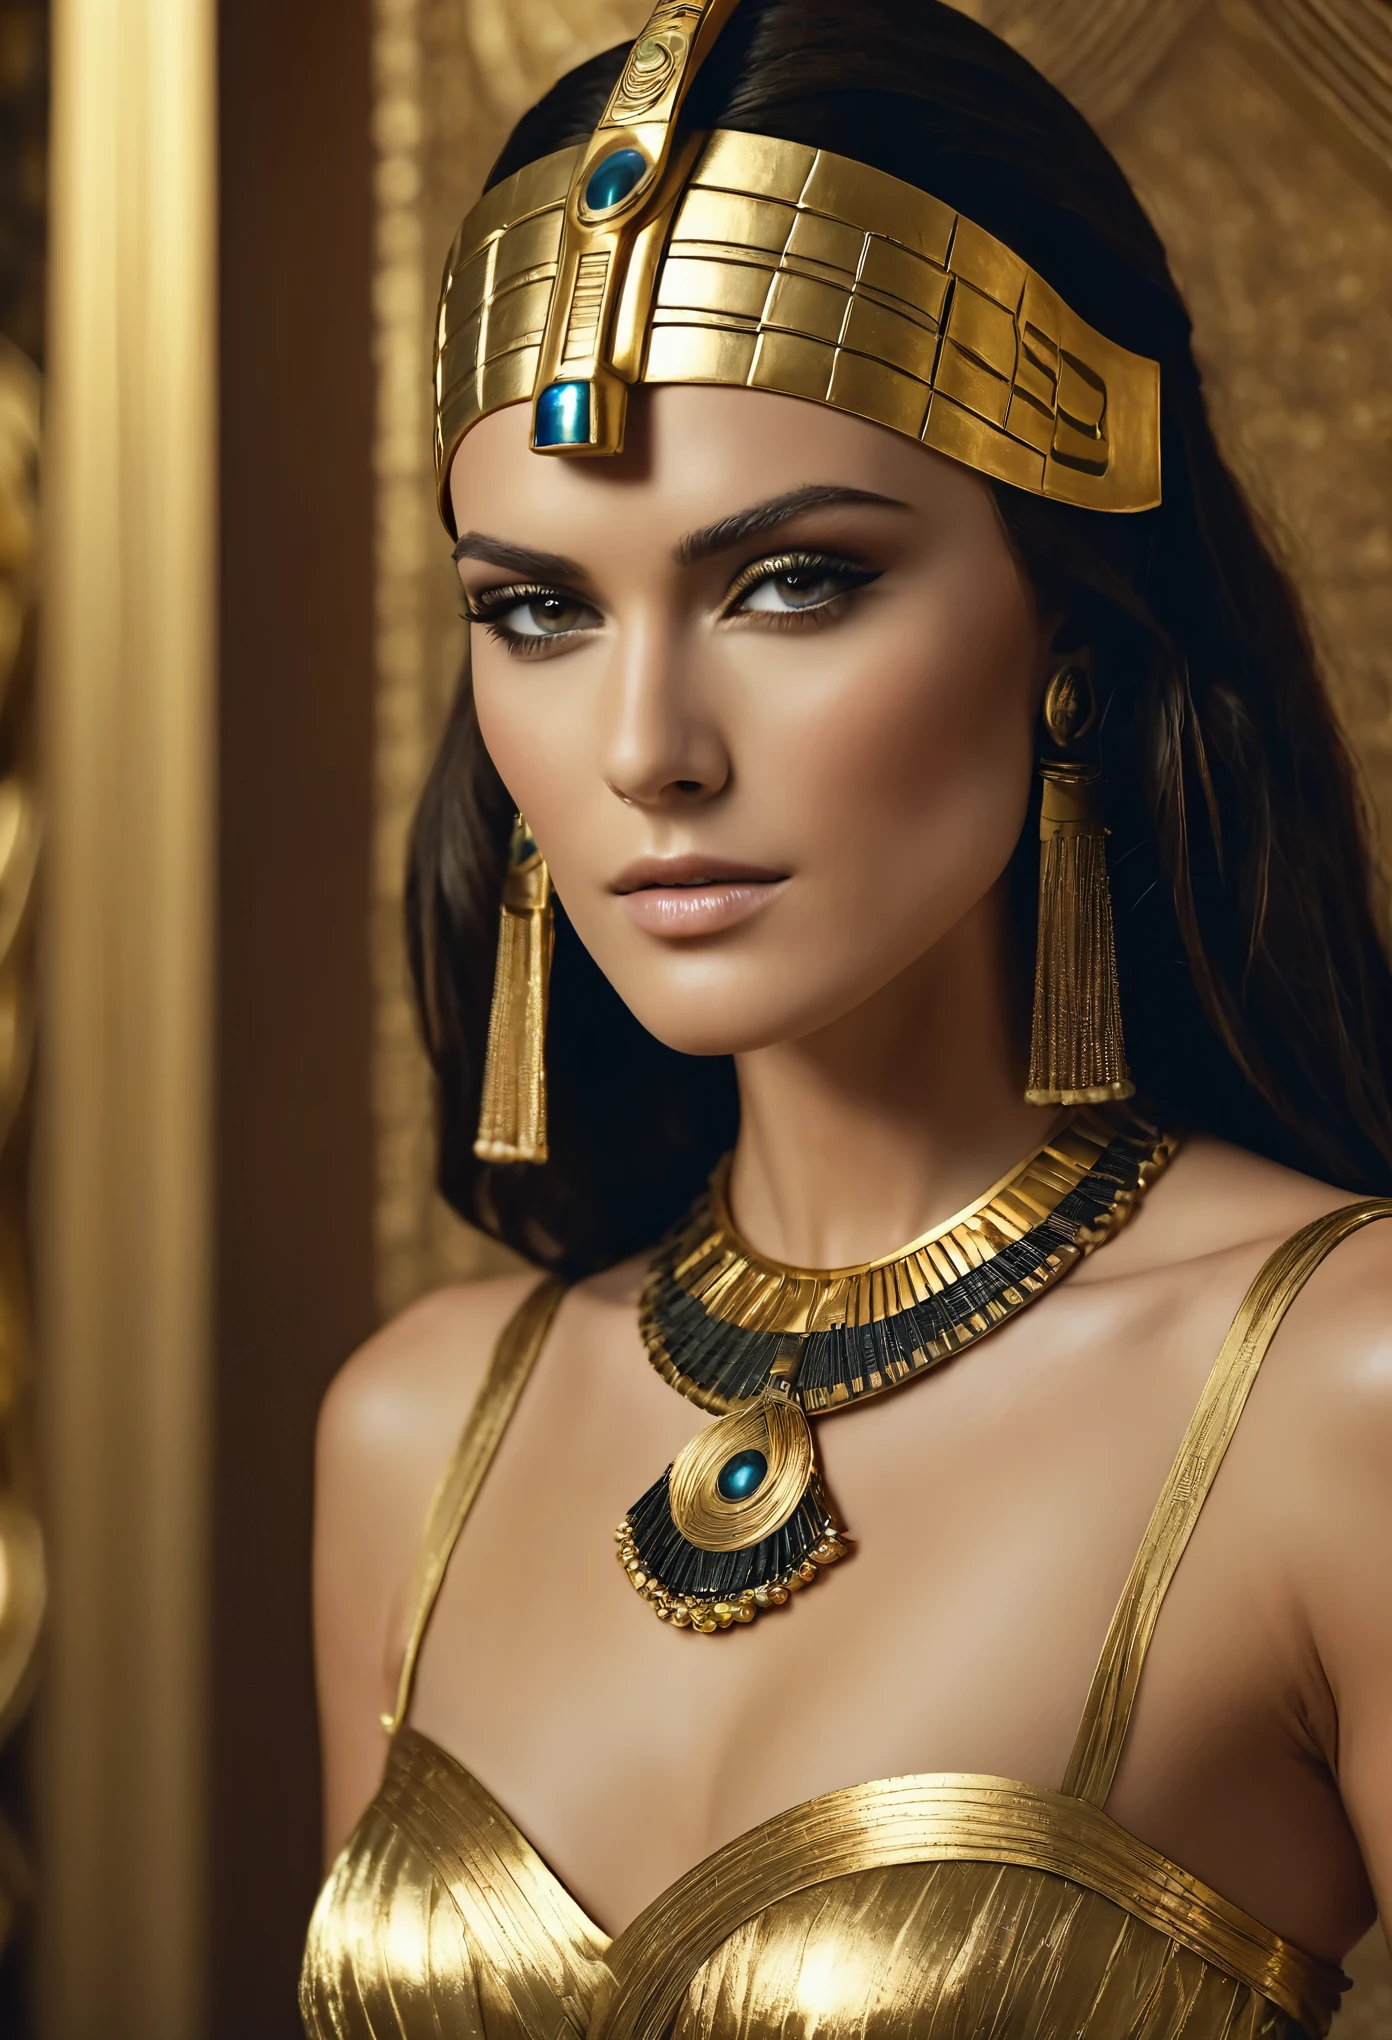 Gorgeous クレオパトラ, 挑発的な人物, 魅力的な人物, エロチックで官能的なエジプトの衣装, 非常識な詳細, thick 魅力的な人物, がっしりした体型, エジプト人 princess, cinematic 女神 close shot, クレオパトラ, 非常に美しい女性, cinematic 女神 body shot, クレオパトラ portrait, 女神, 見事な美しさ, 非常に高い詳細, エジプト人, クレオパトラ in her palace, cinematic 女神 shot, エジプト人 style, extremely 詳細 女神 shot, beautiful 女神, 映画の肖像画, プロの撮影, エジプト人として, キーラ・ナイトレイ 美しく魅力的なファラオ、キーラ・ナイトレイ, クレオパトラの肖像画, 超高解像度, 8K, 32K, 詳細, 複雑な, シャープな美しさ, 高解像度, 映画の視点, 欠点のないイメージ, 古代エジプトの背景金色のドレスとエジプトのマスクを身に着けた女性のクローズアップ, a 映画の肖像画, 熟練した撮影技術, クレイジーな詳細, エジプトの王女, a close-up of a cinematic 女神, クレオパトラ, 信じられないほど美しい女性, and a cinematic 女神 body